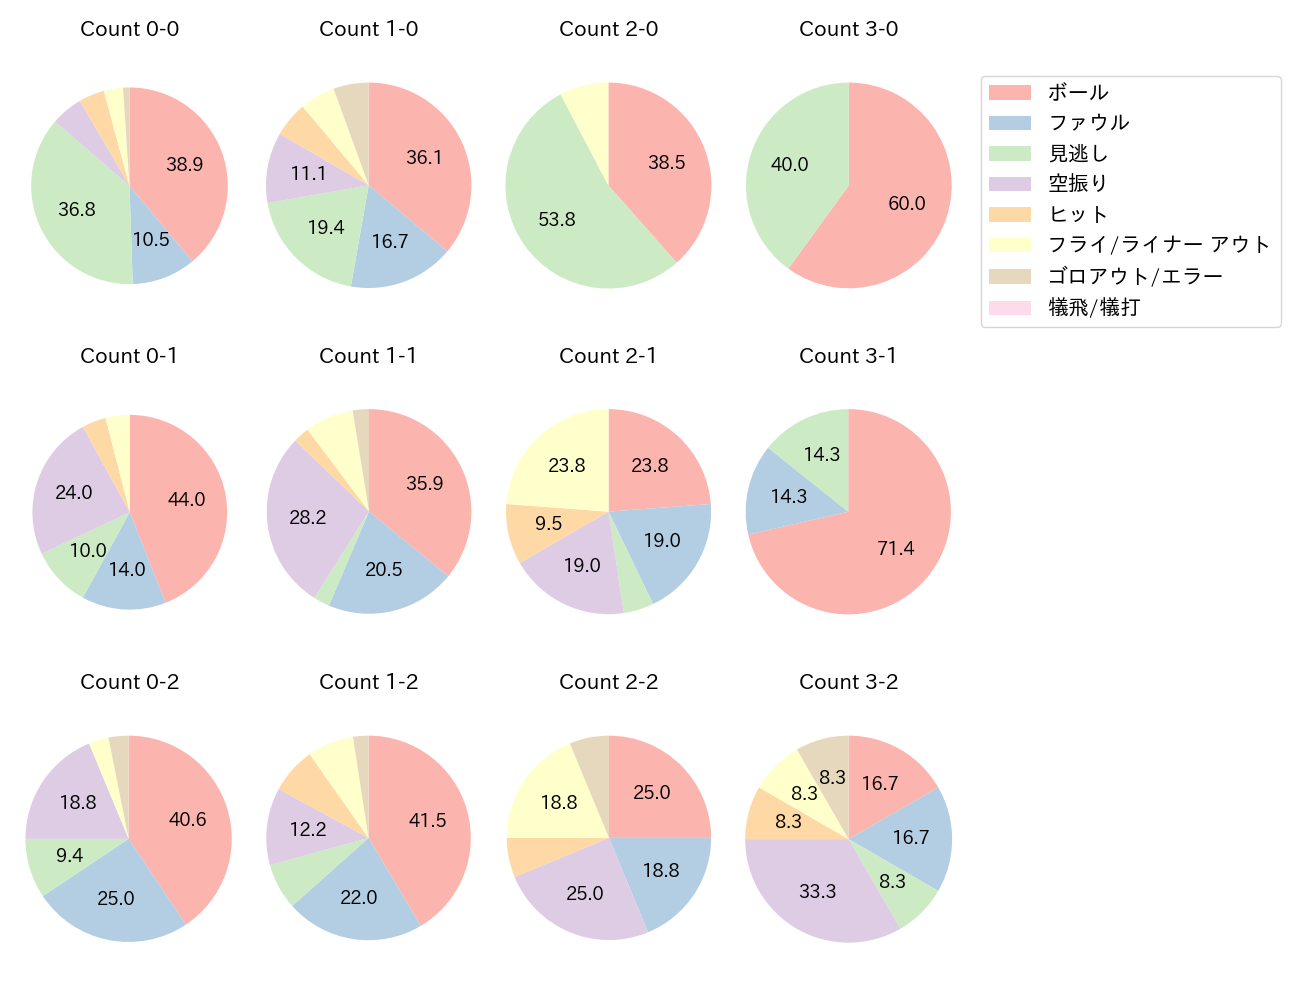 山田 哲人の球数分布(2022年8月)